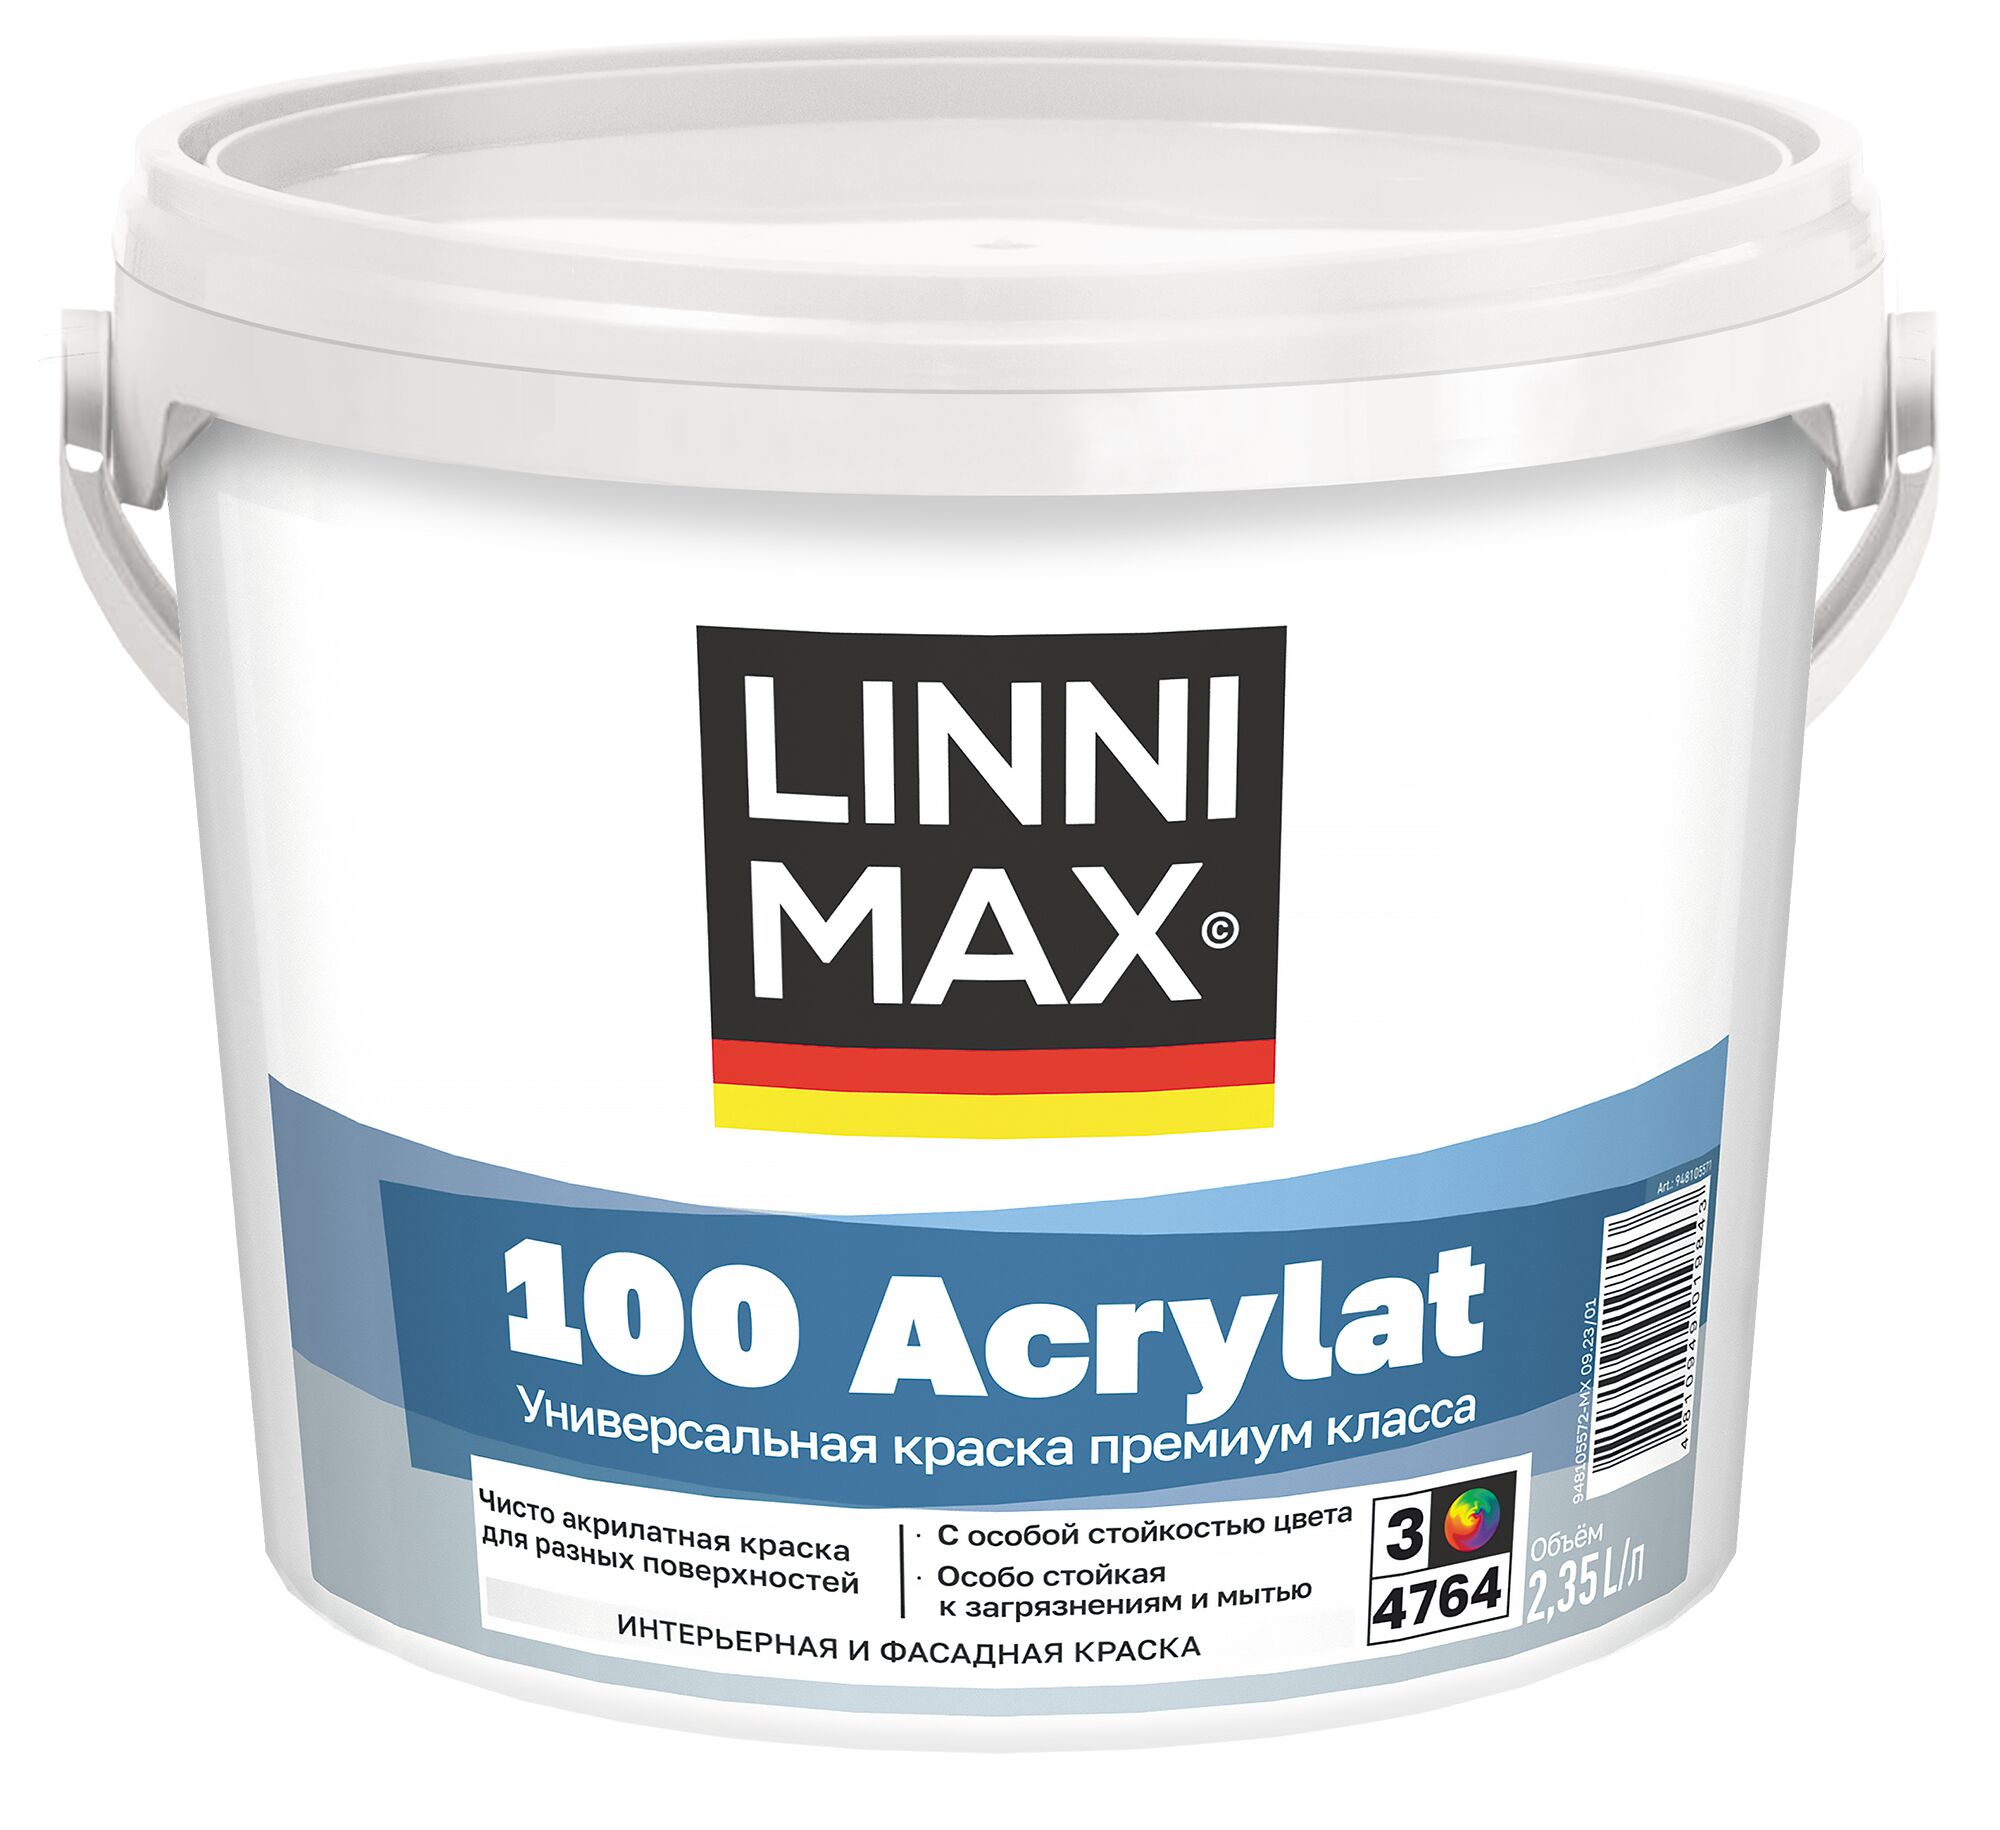 100 Acrylat 2,35л Краска водно-дисперсионная для наружных и внутренних работ База3 LINNIMAX, 100 Acrylat 2,35л Краска водно-дисперсионная для наружных и внутренних работ База3 LINNIMAX